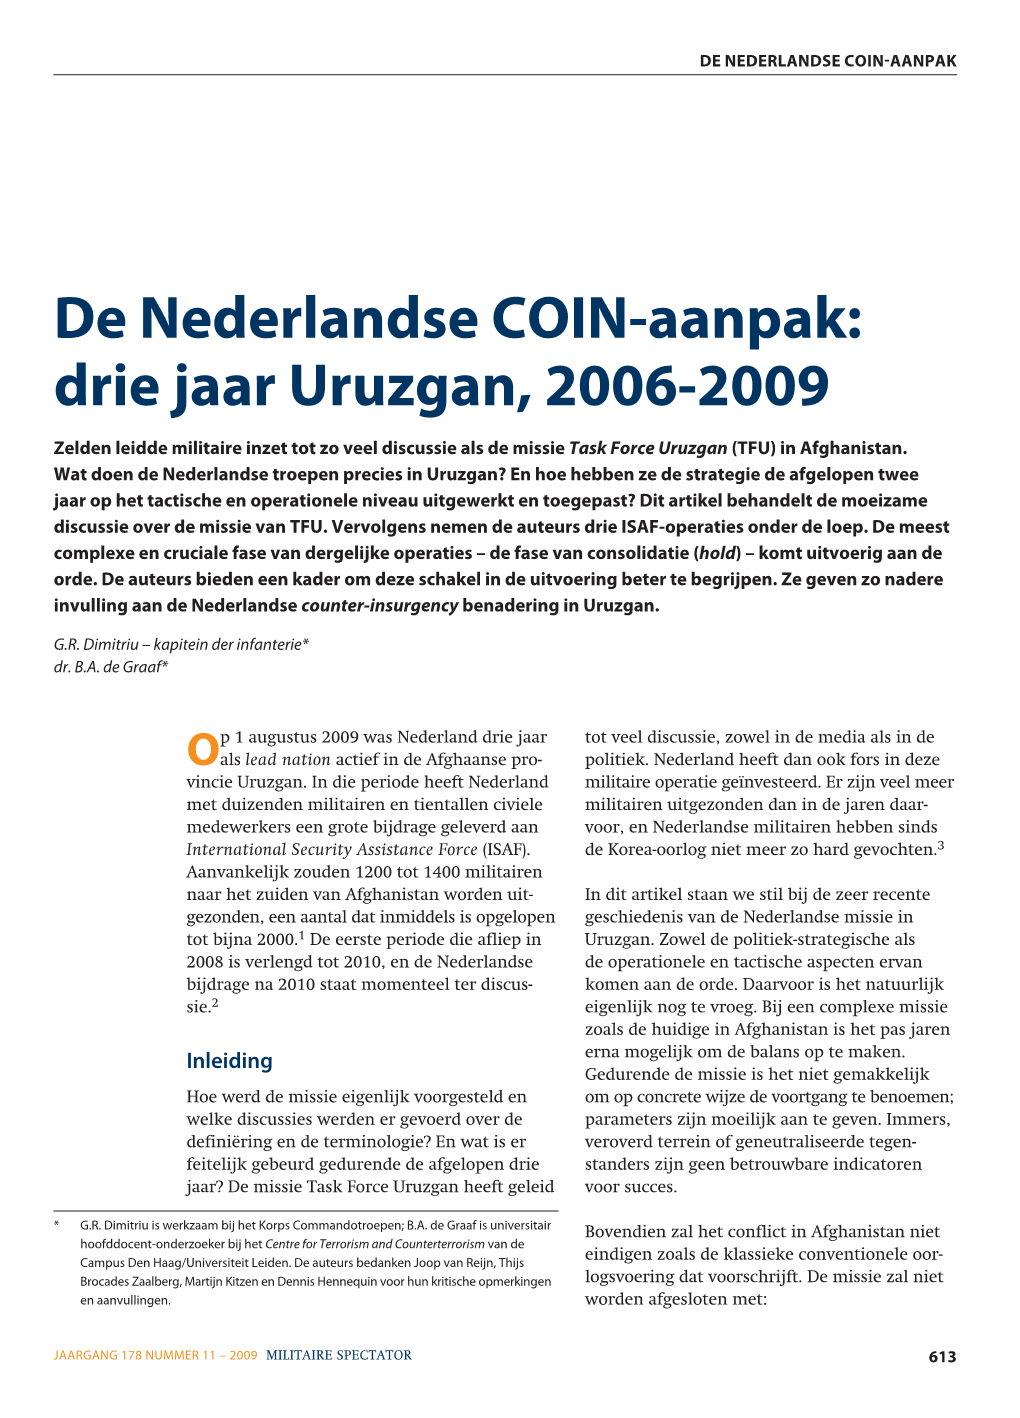 De Nederlandse COIN-Aanpak: Drie Jaar Uruzgan, 2006-2009